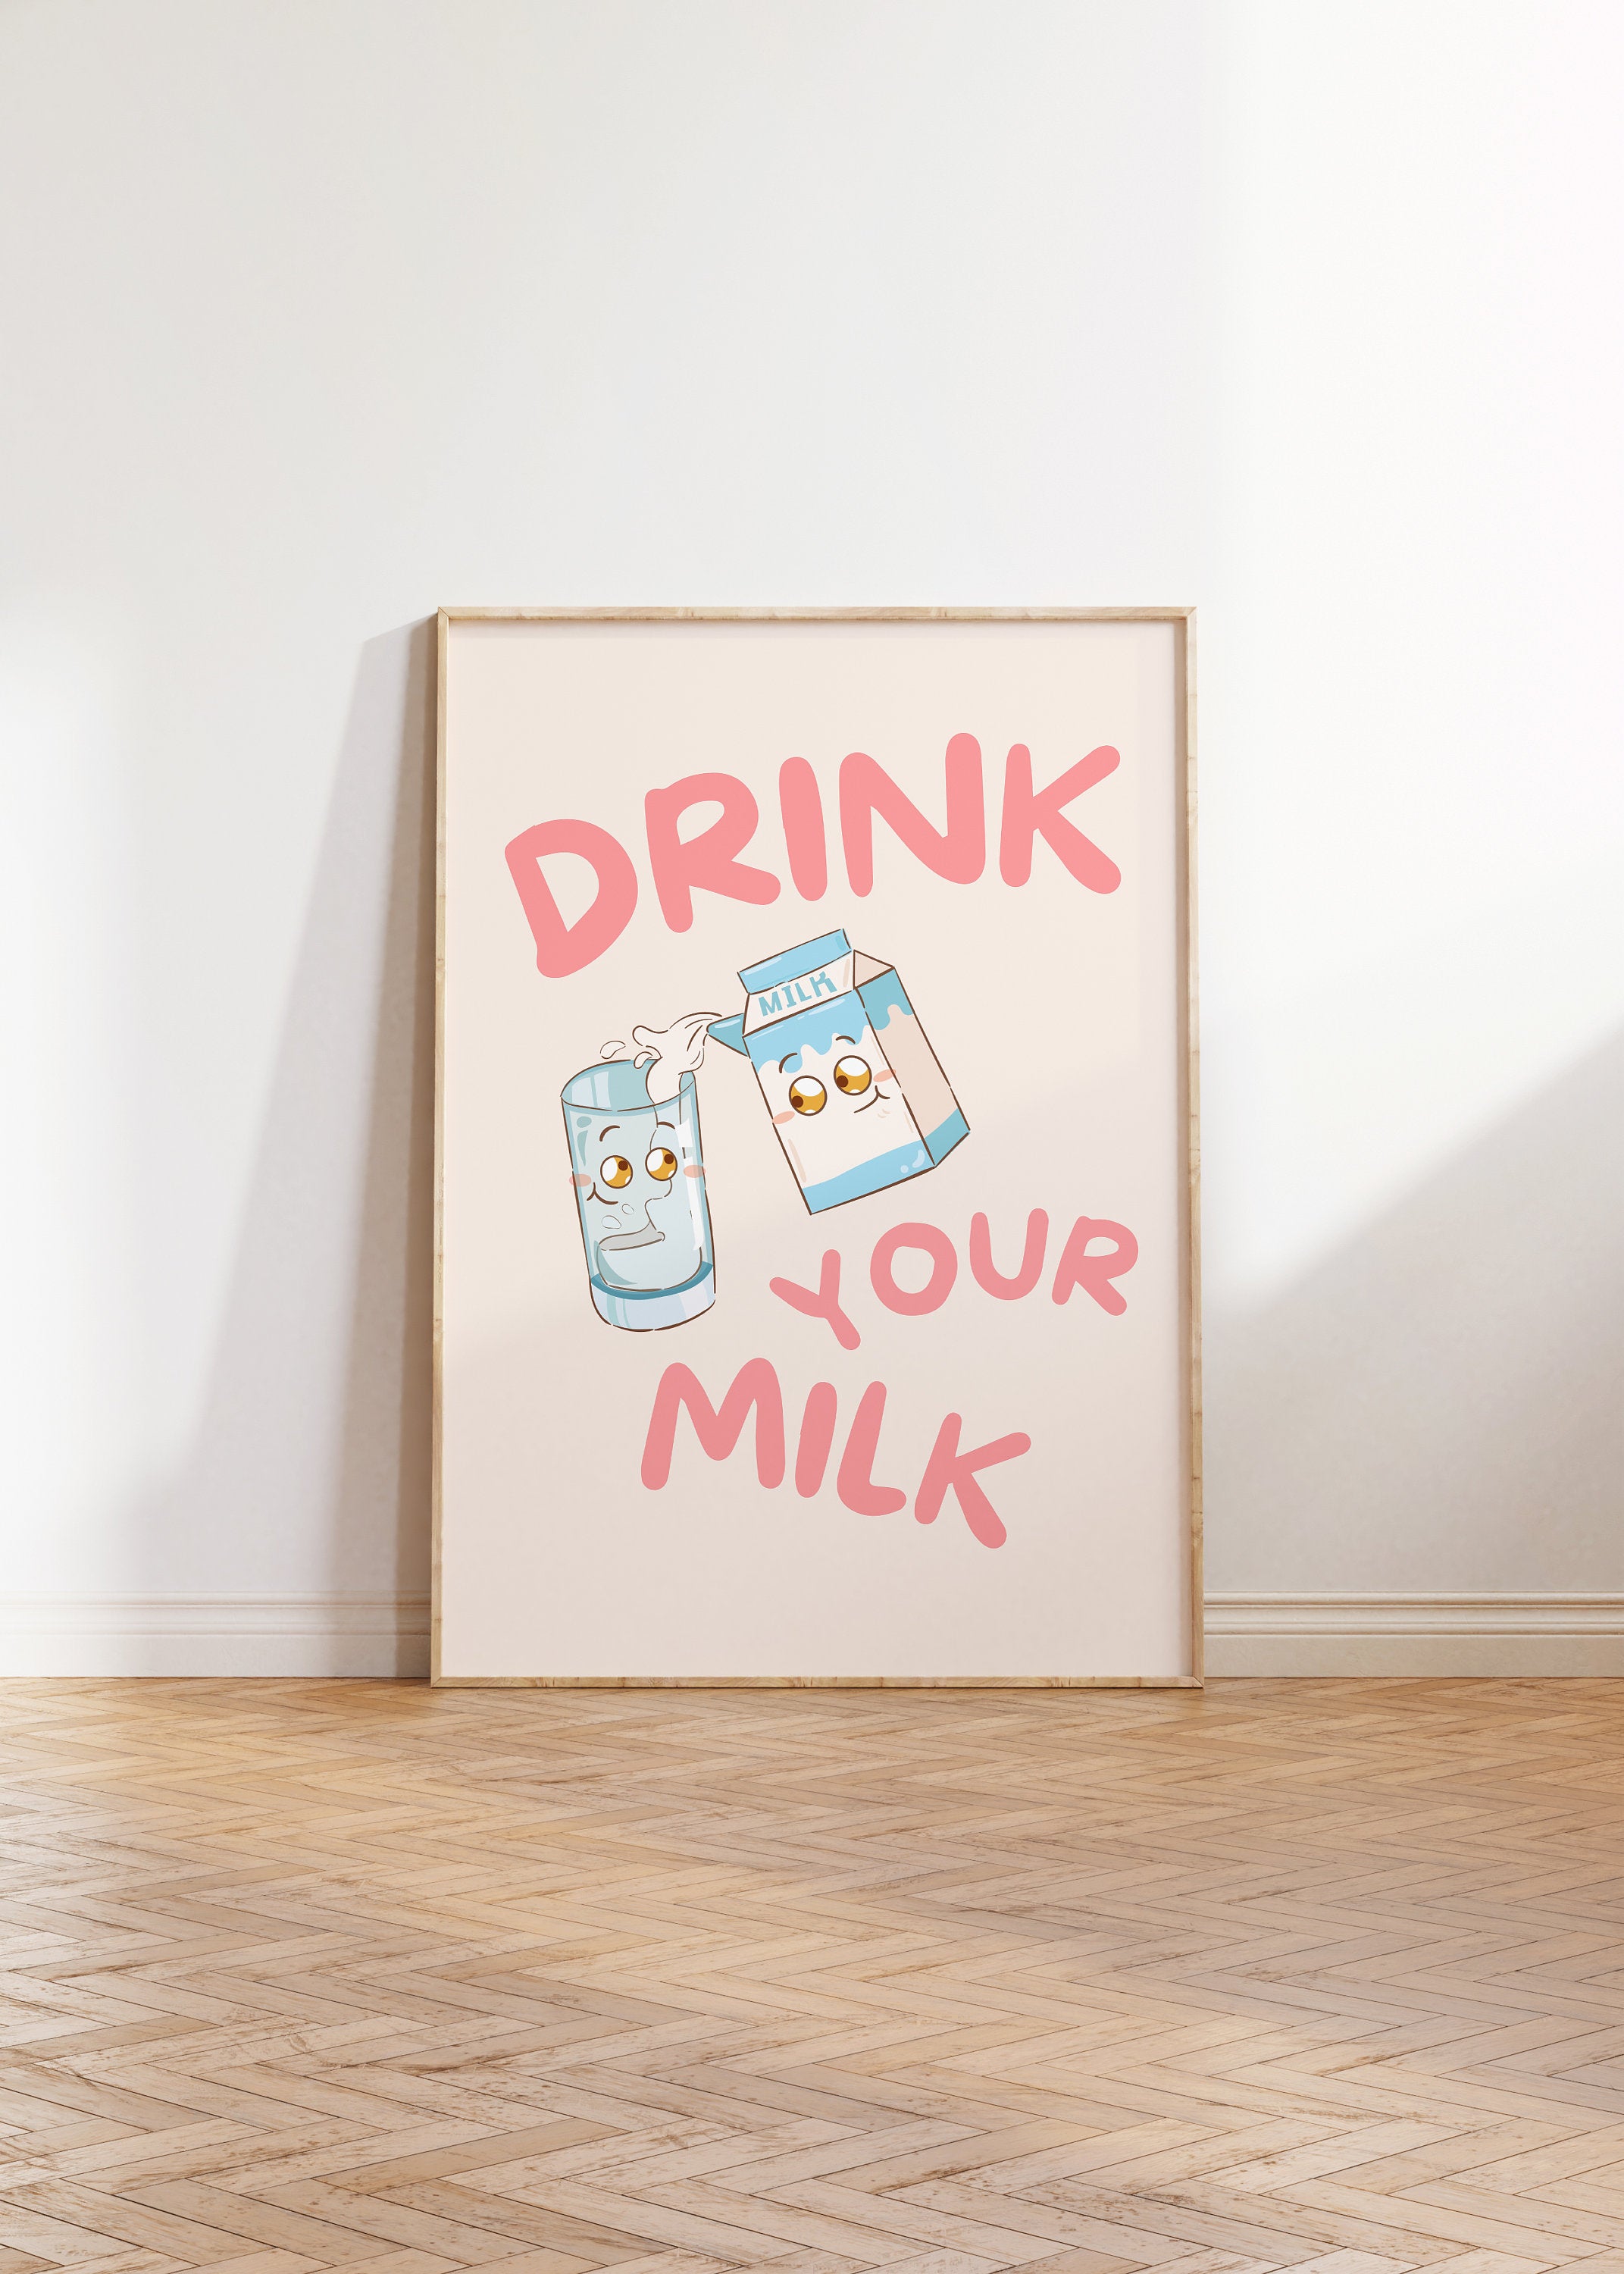 Drink Your Milk, Digital Prints, Wall Art Print, Kids Art Prints, School Art, Kids Room, Kids Decor, Kitchen Decor, Cute Cartoon Art Print